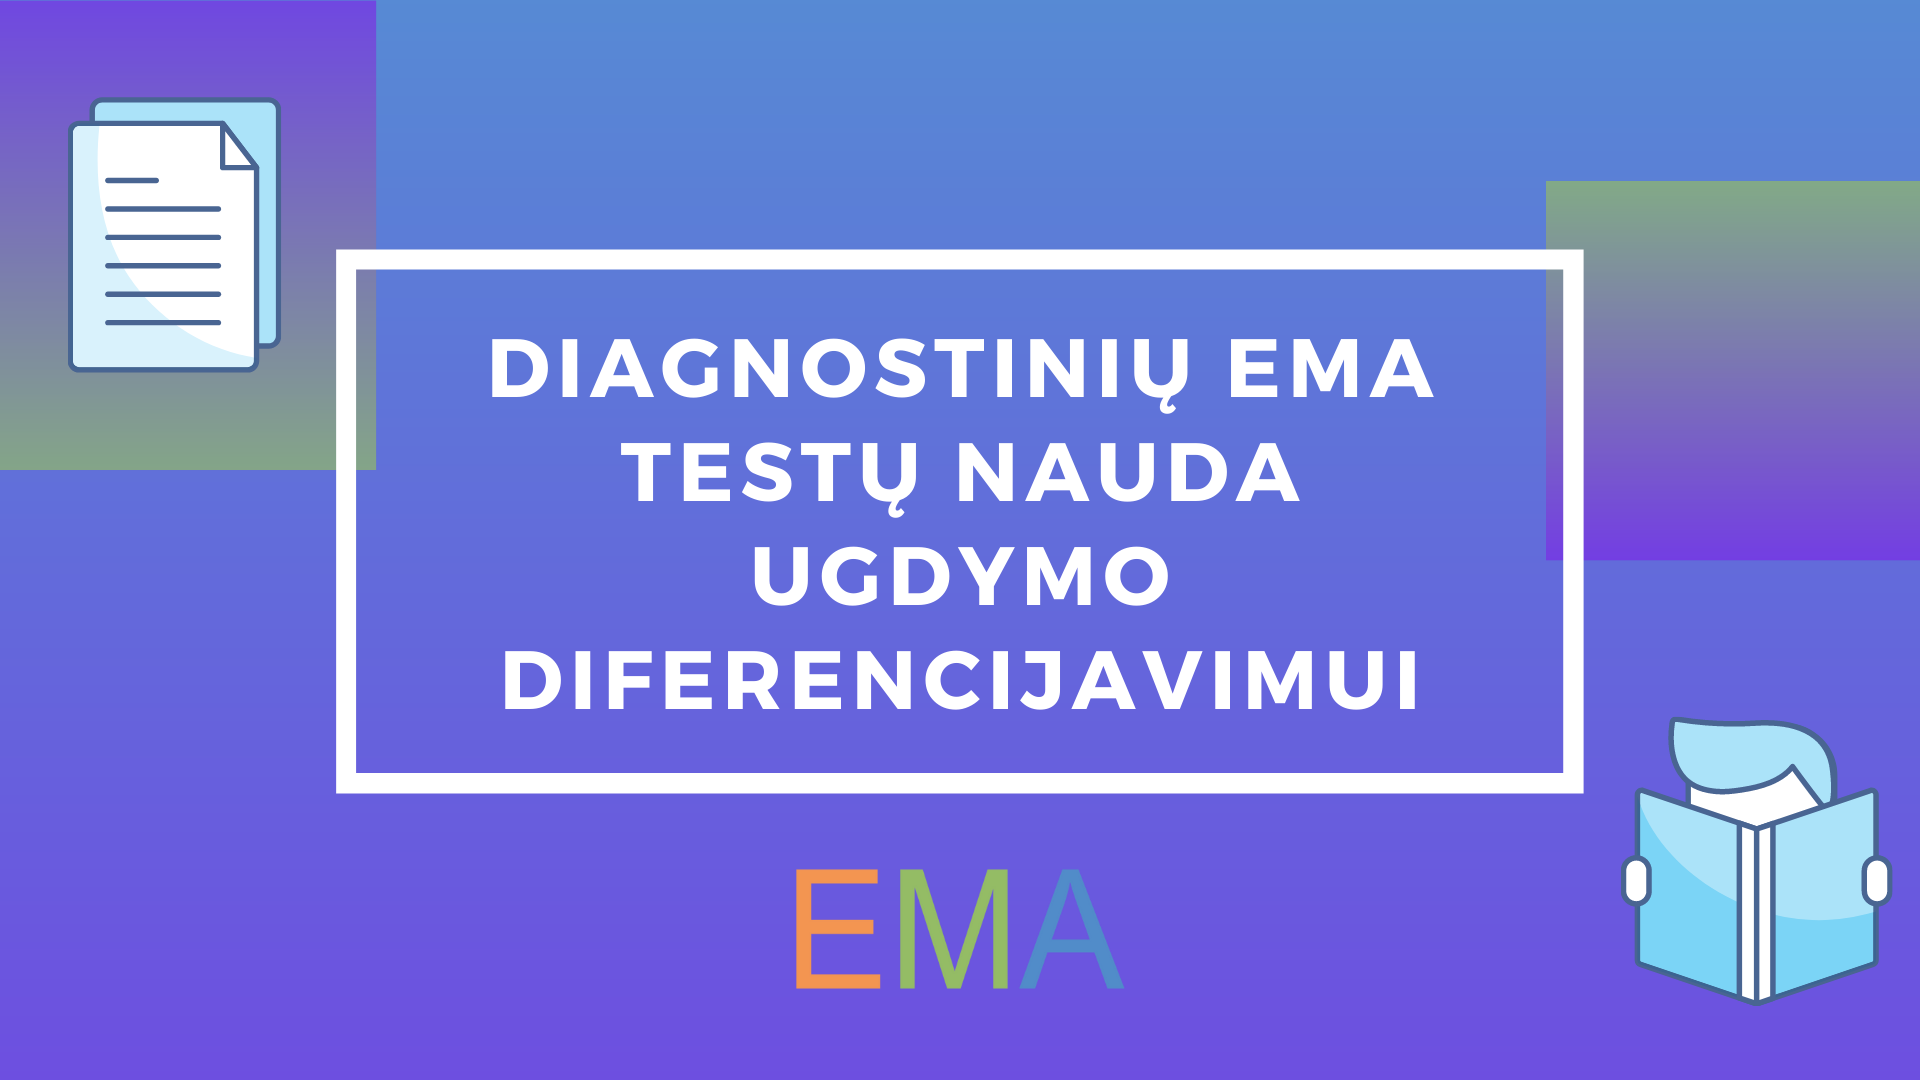 Diagnostinių EMA testų nauda ugdymo diferencijavimui.